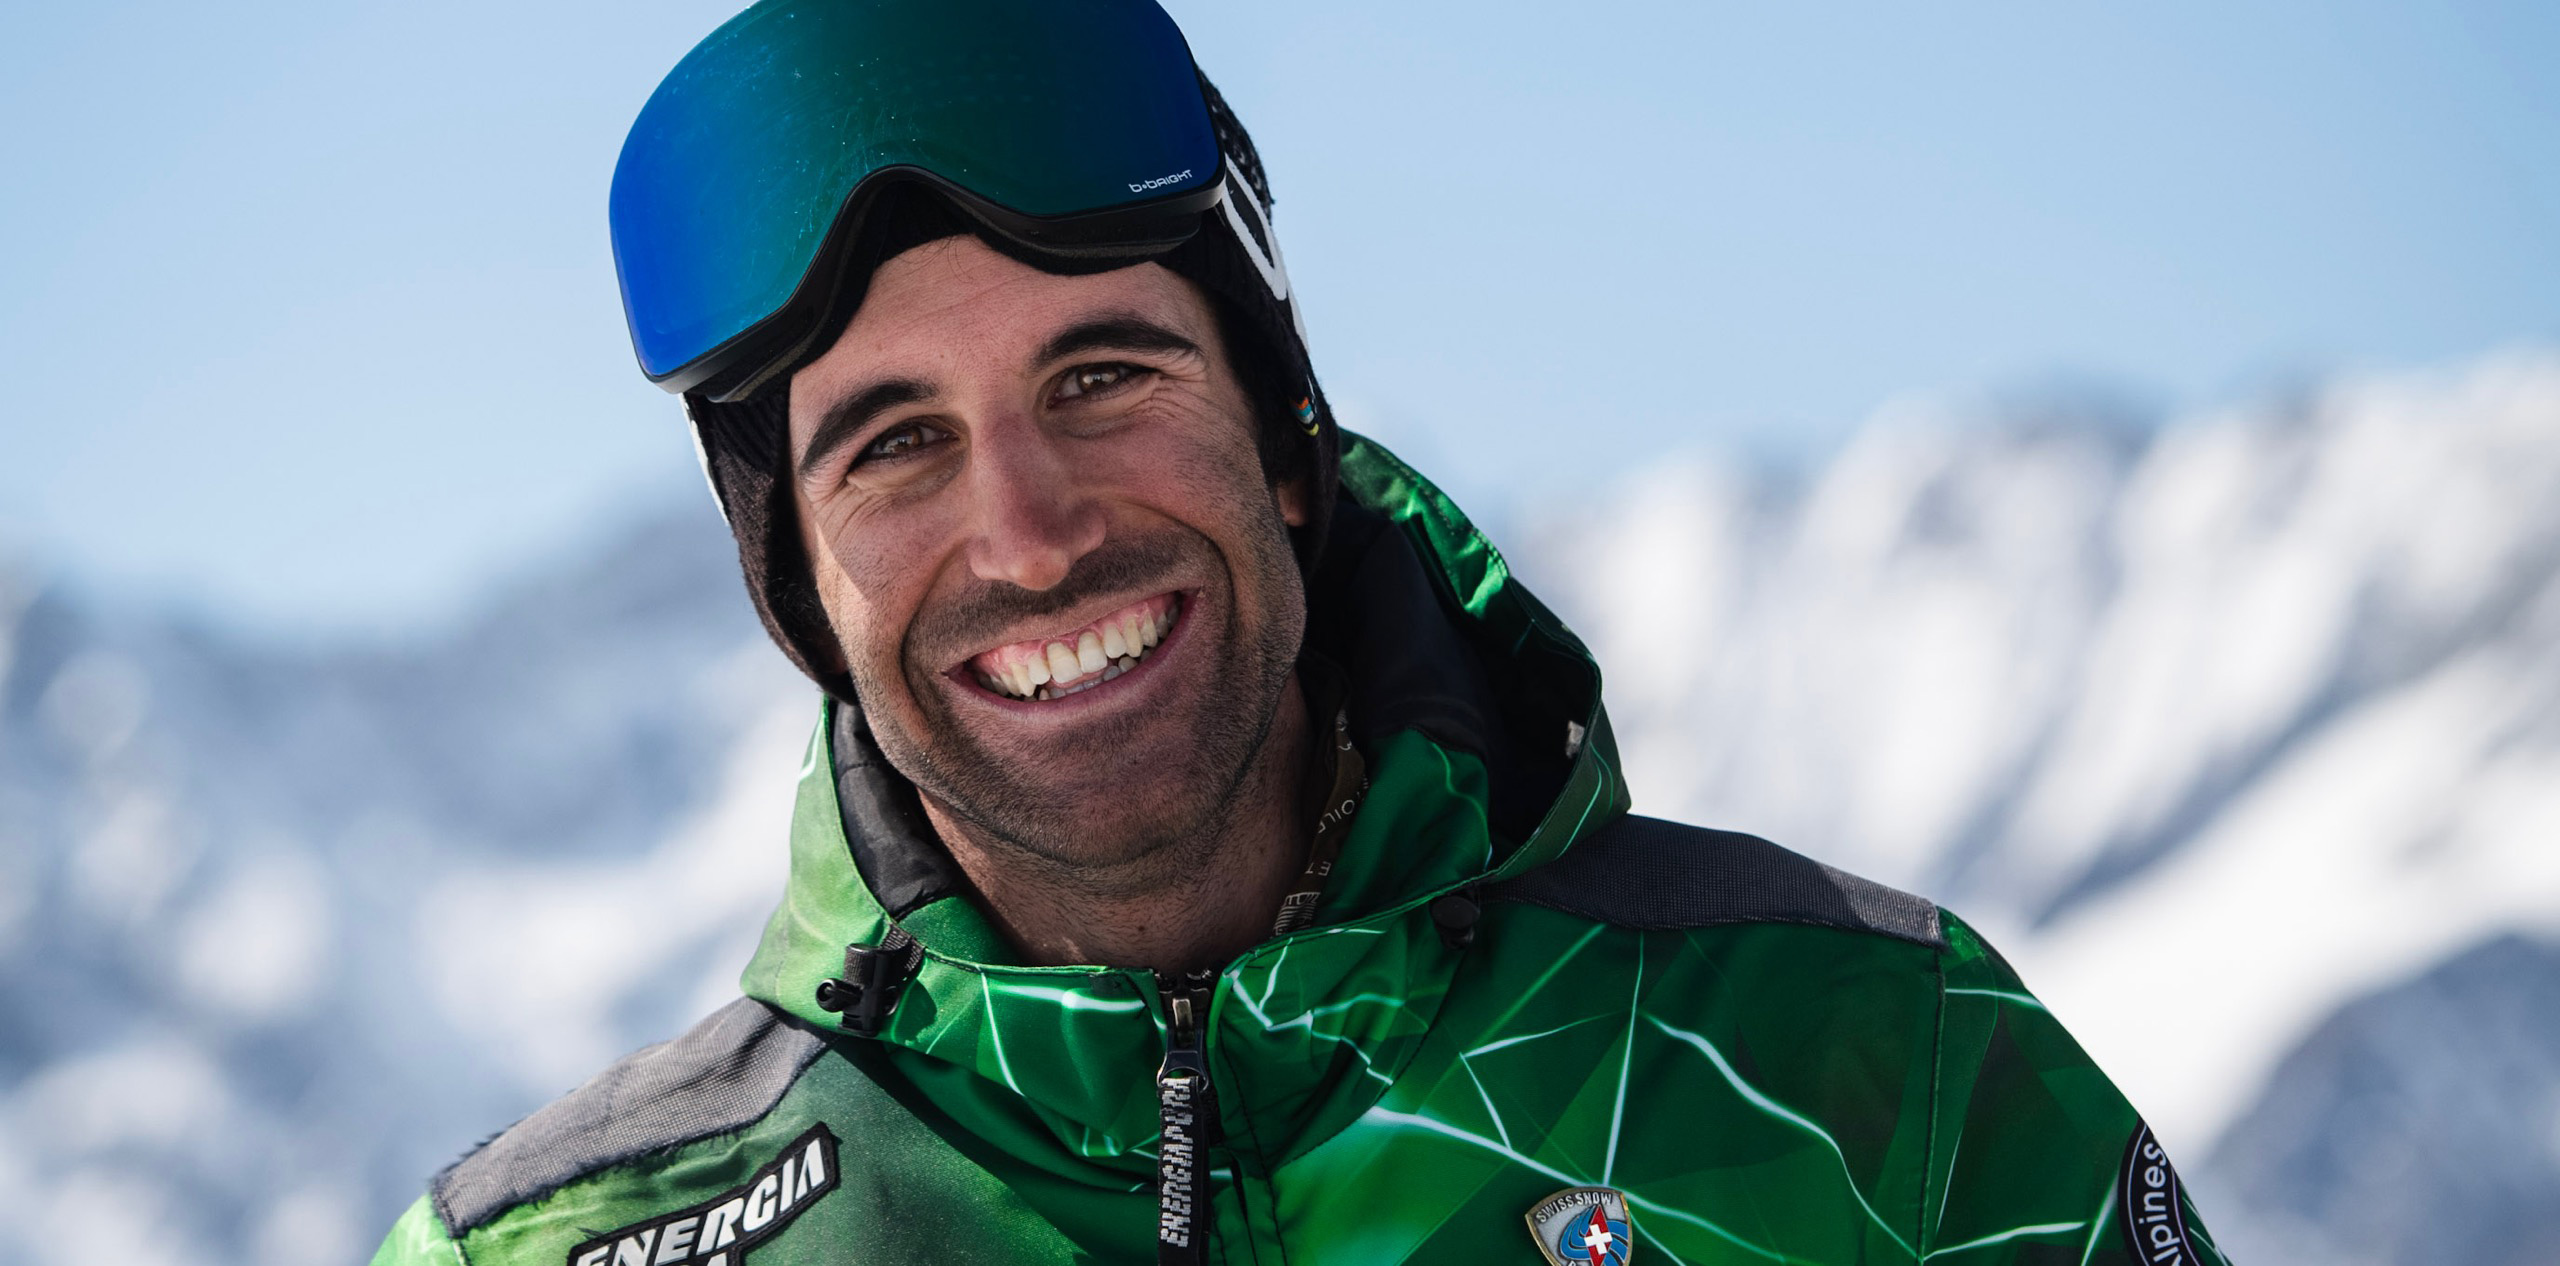 Instructor de esquí con uniforme, sonriendo, con las manos en las caderas, las montañas de Zermatt en el fondo